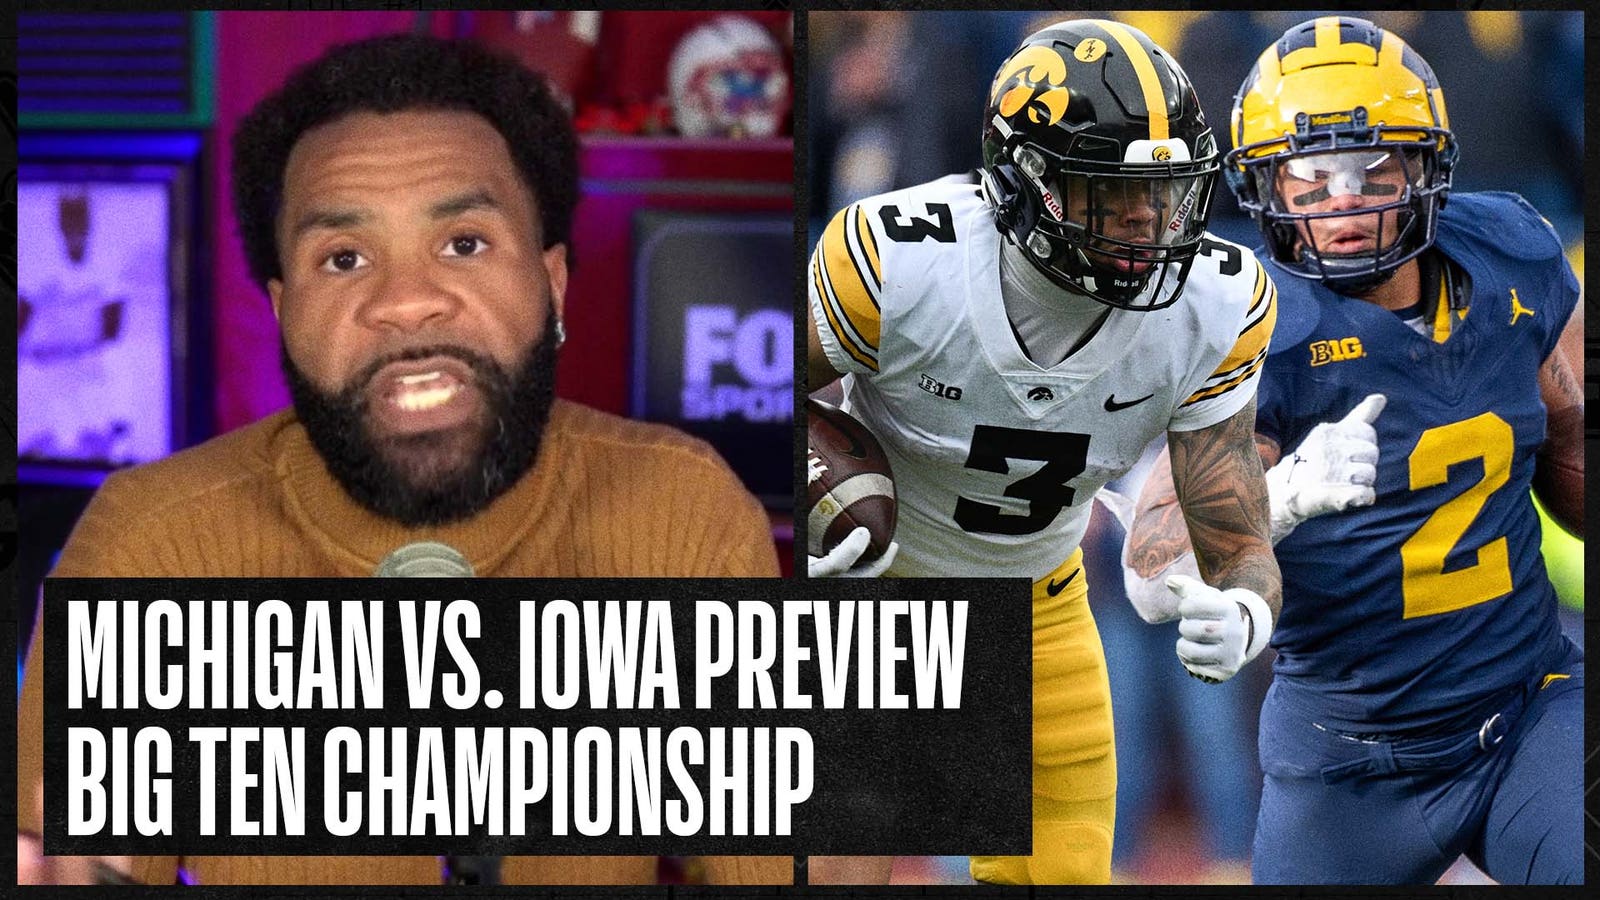 No. 2 Michigan vs. No. 16 Iowa Preview: Battle for the Big Ten Championship